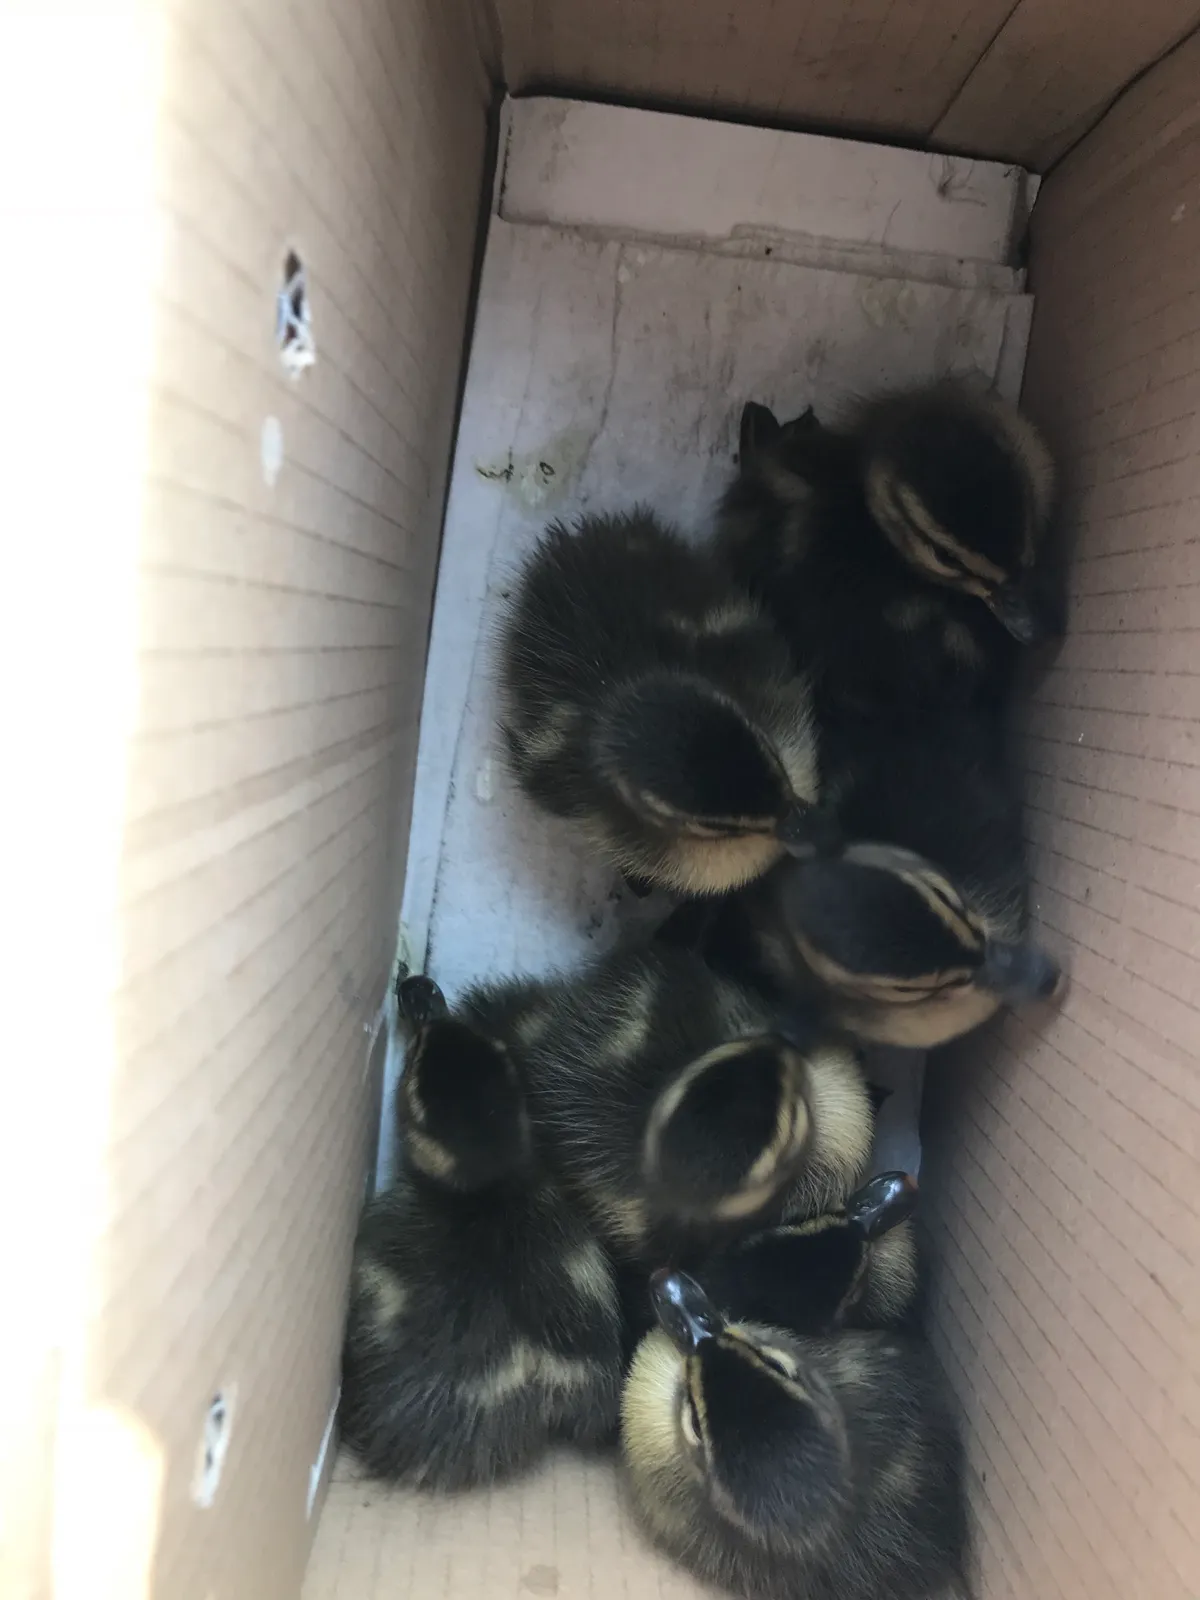 Rescued ducklings.